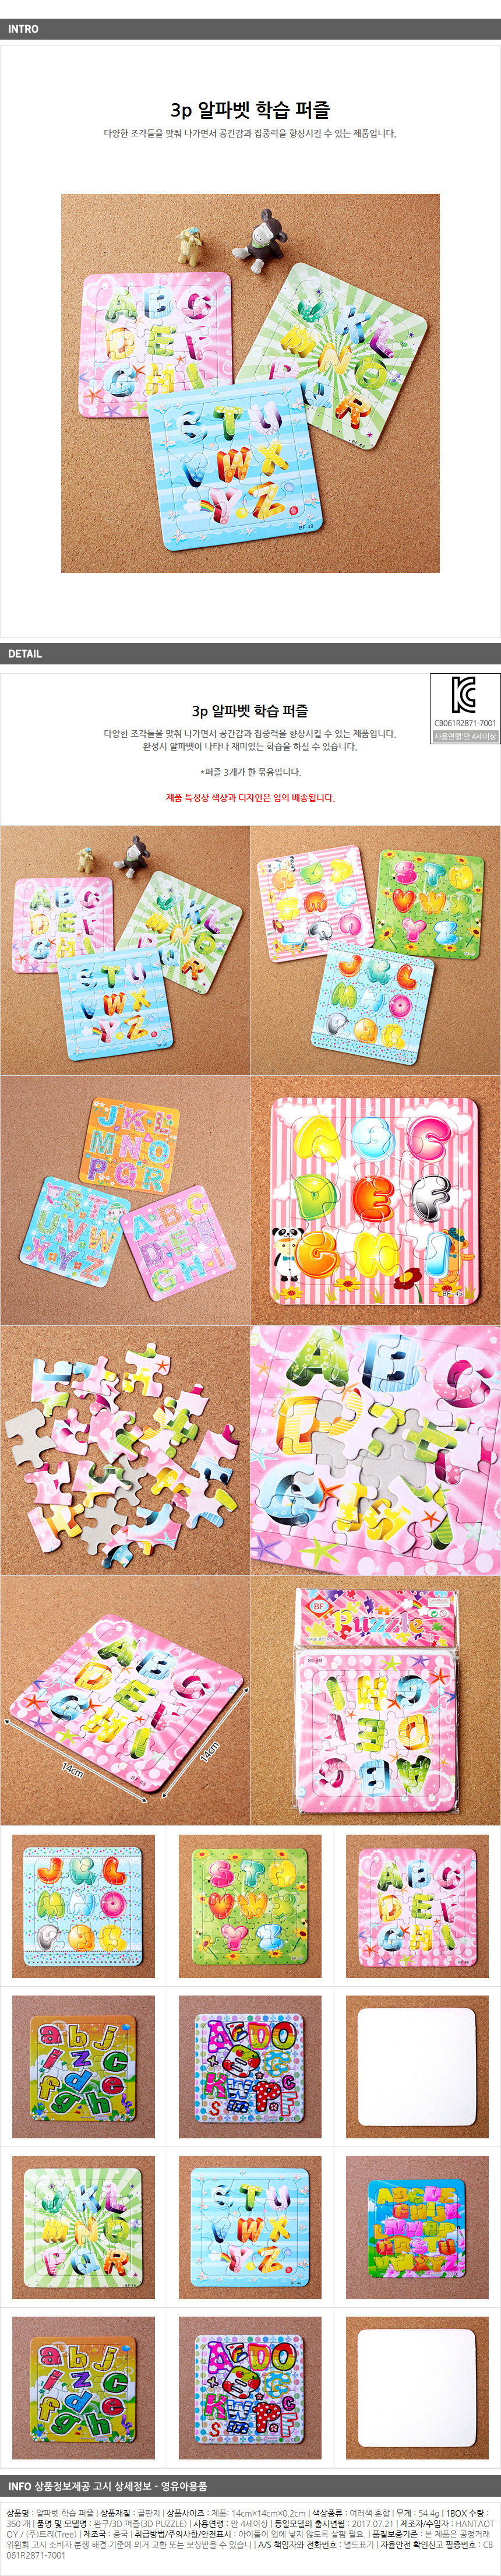 알파벳 학습 퍼즐/어린이날선물 행사사은품 행